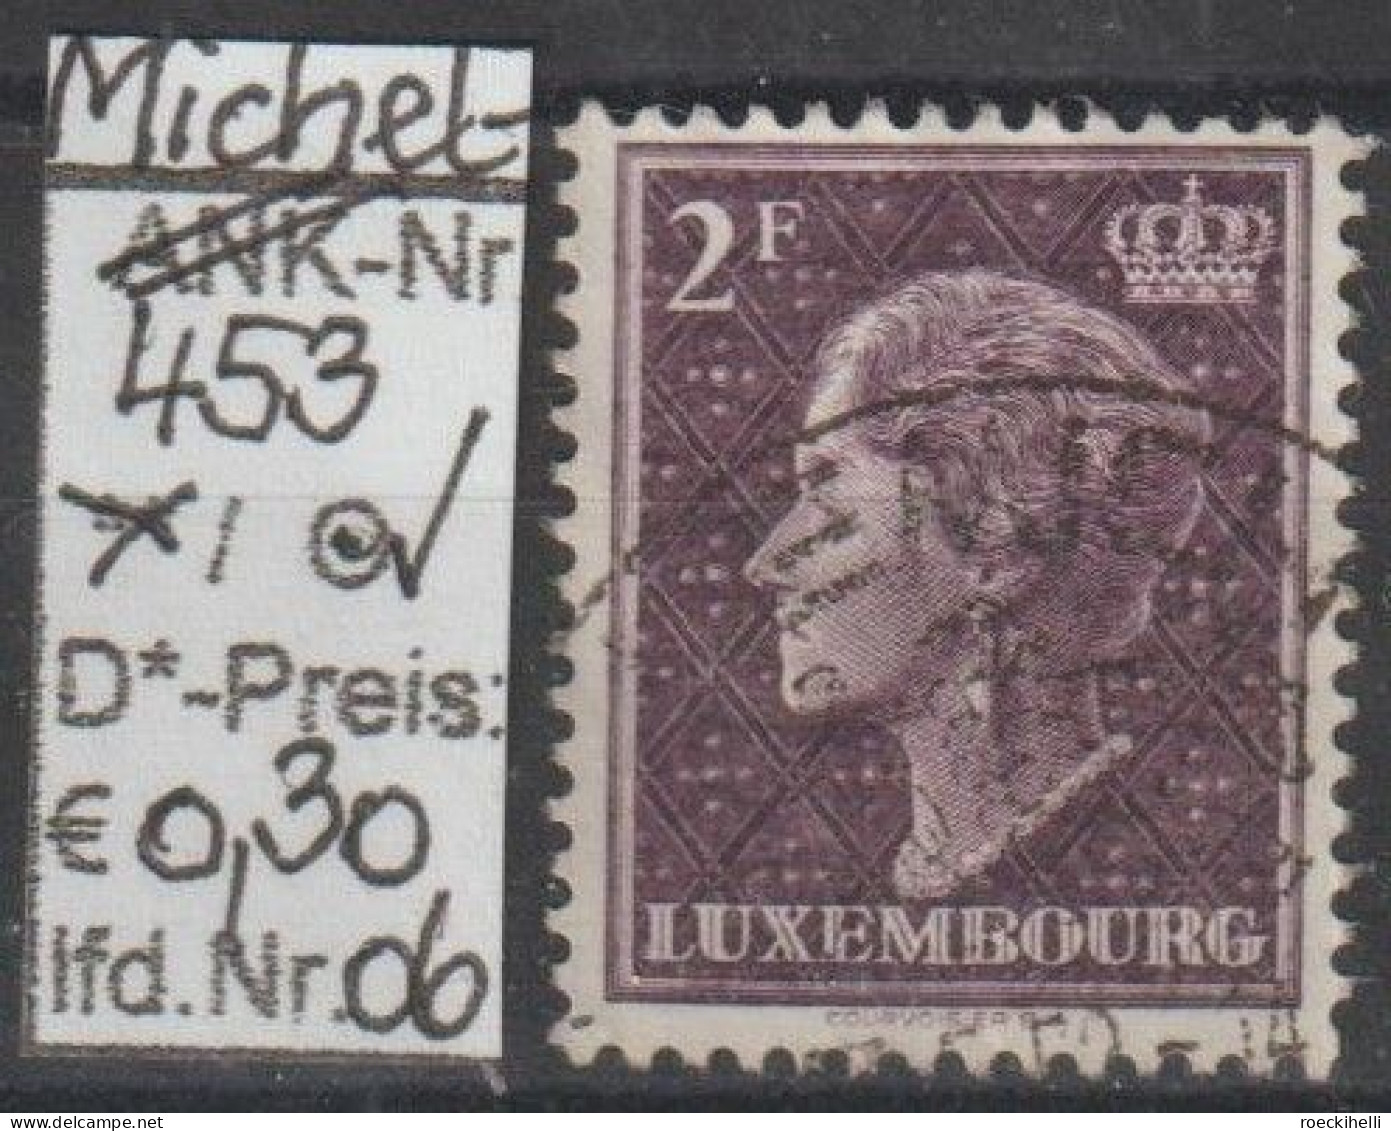 1948 - LUXEMBURG - FM/DM "Großherzogin Charlotte" 2 Fr dkl'purpur  - o  gestempelt - s. Scan (lux 453o 01-07)